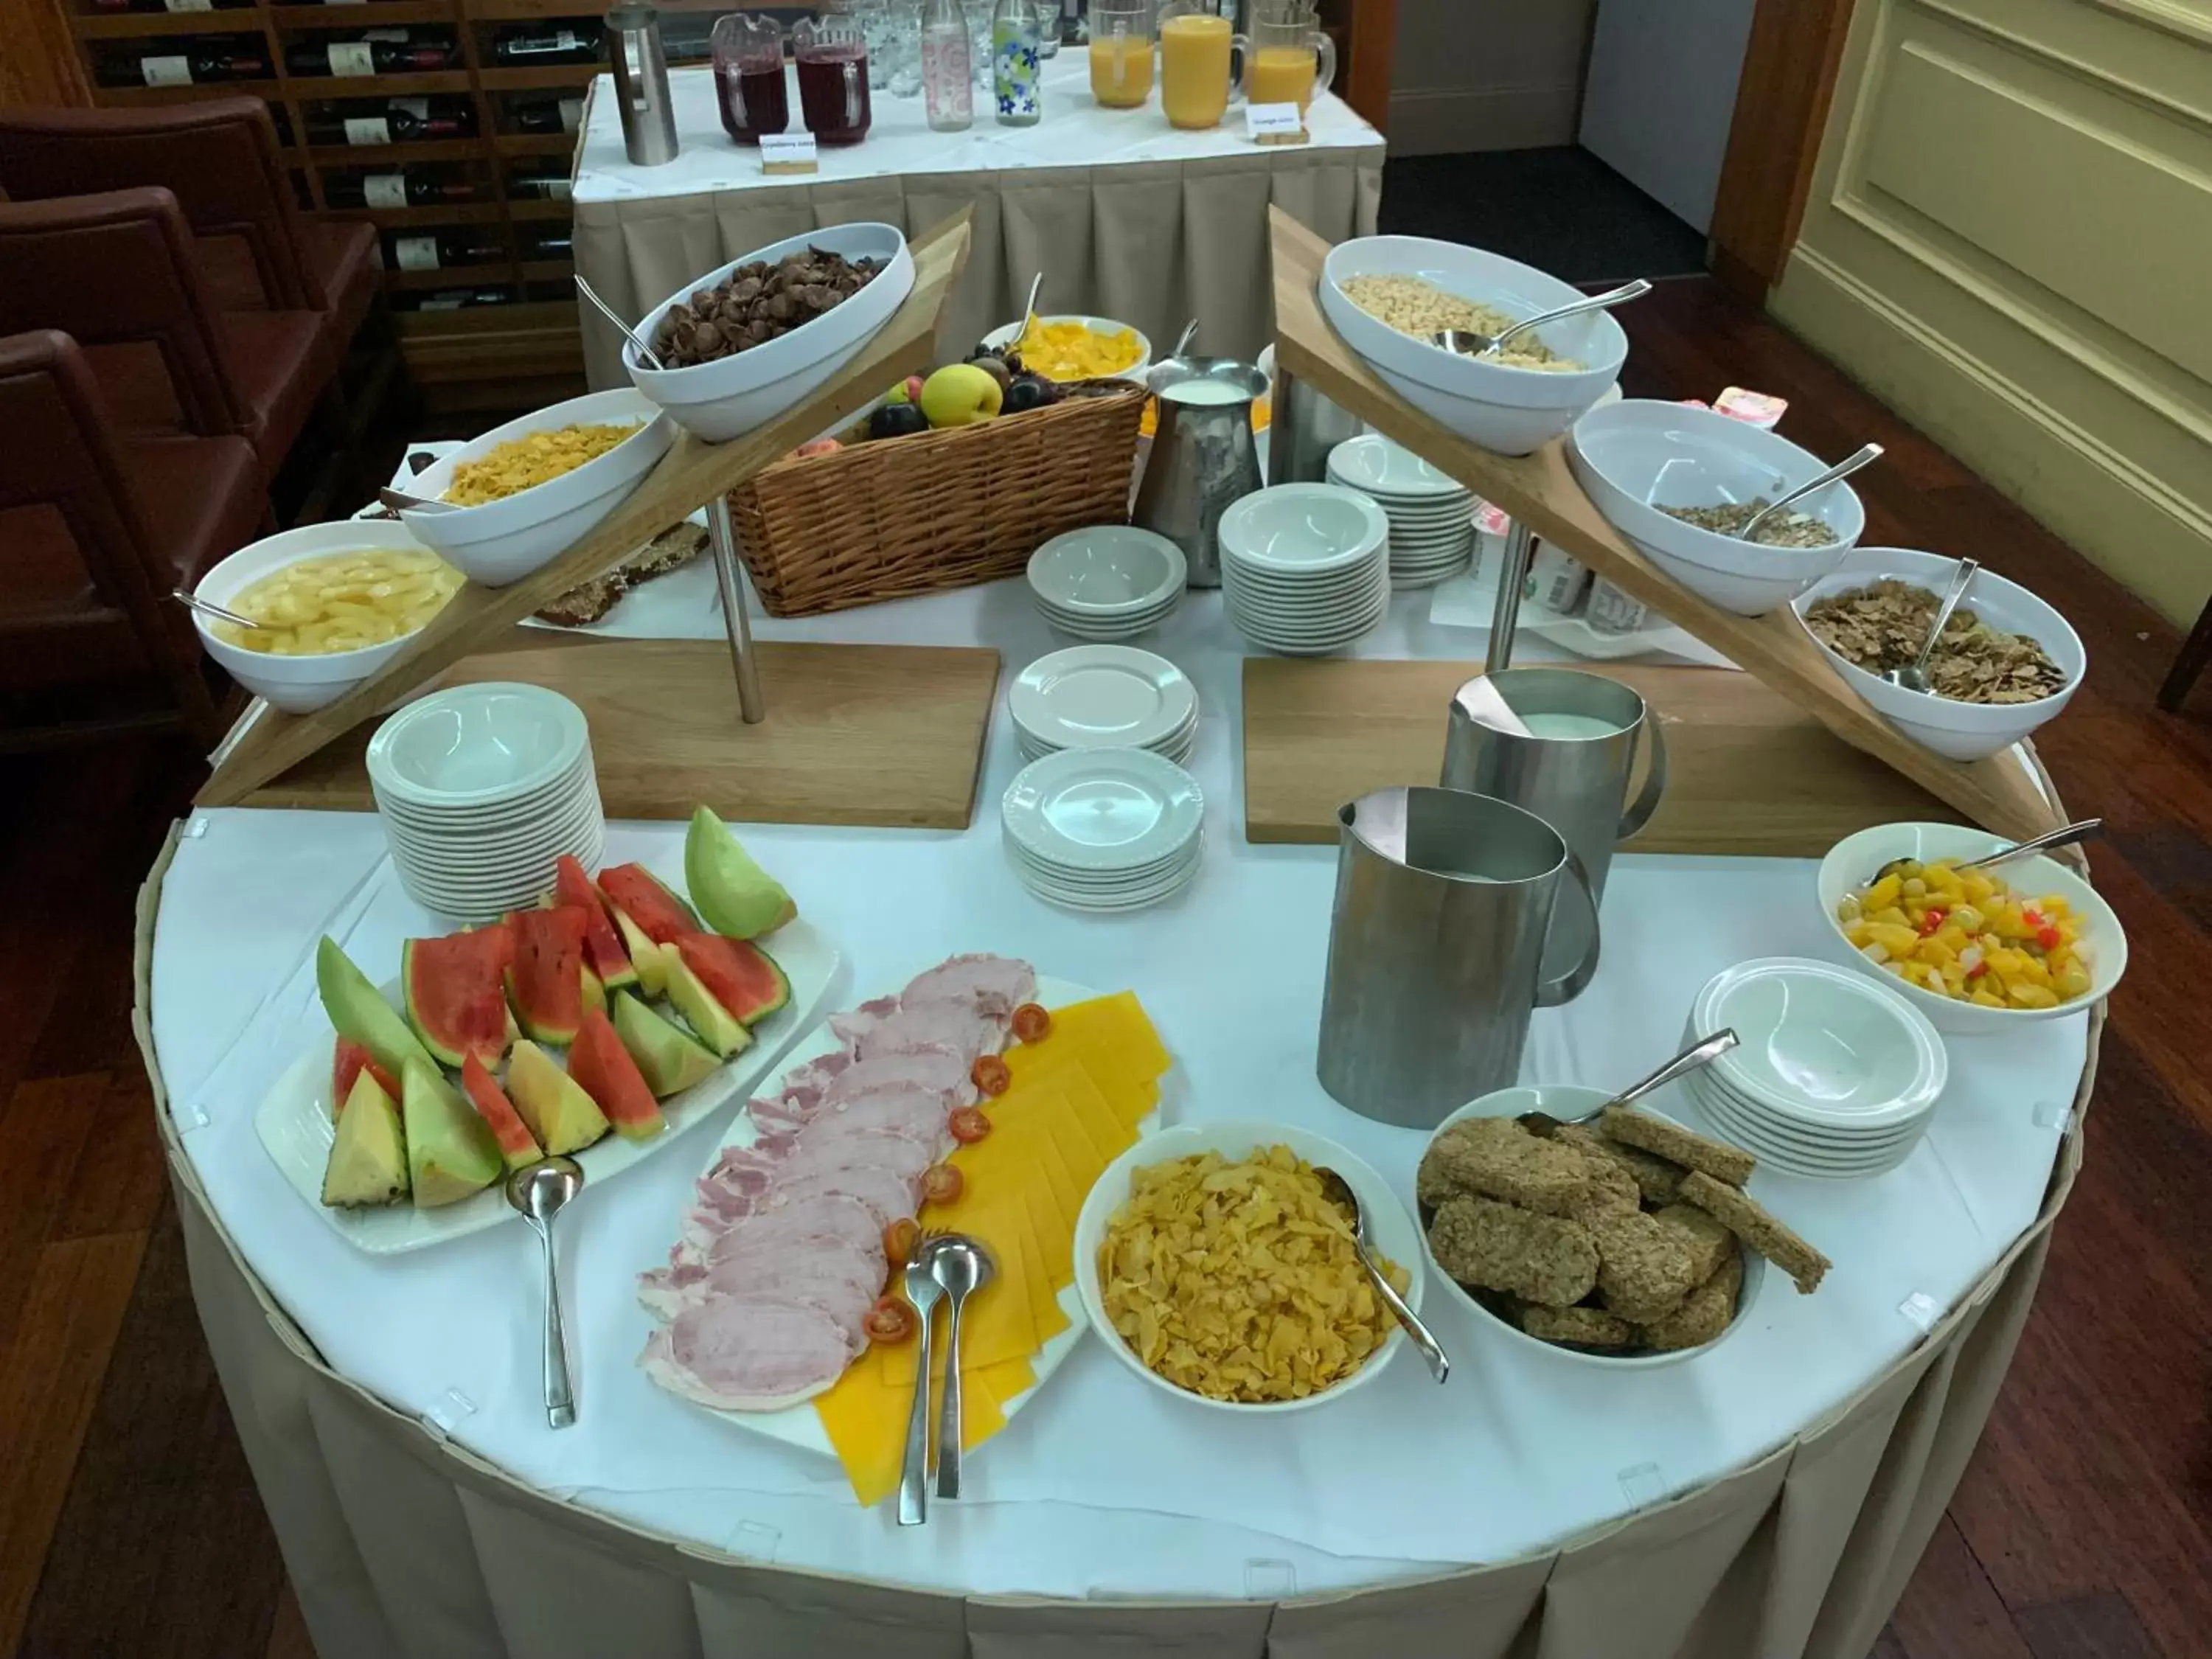 Breakfast in Lawlors Hotel